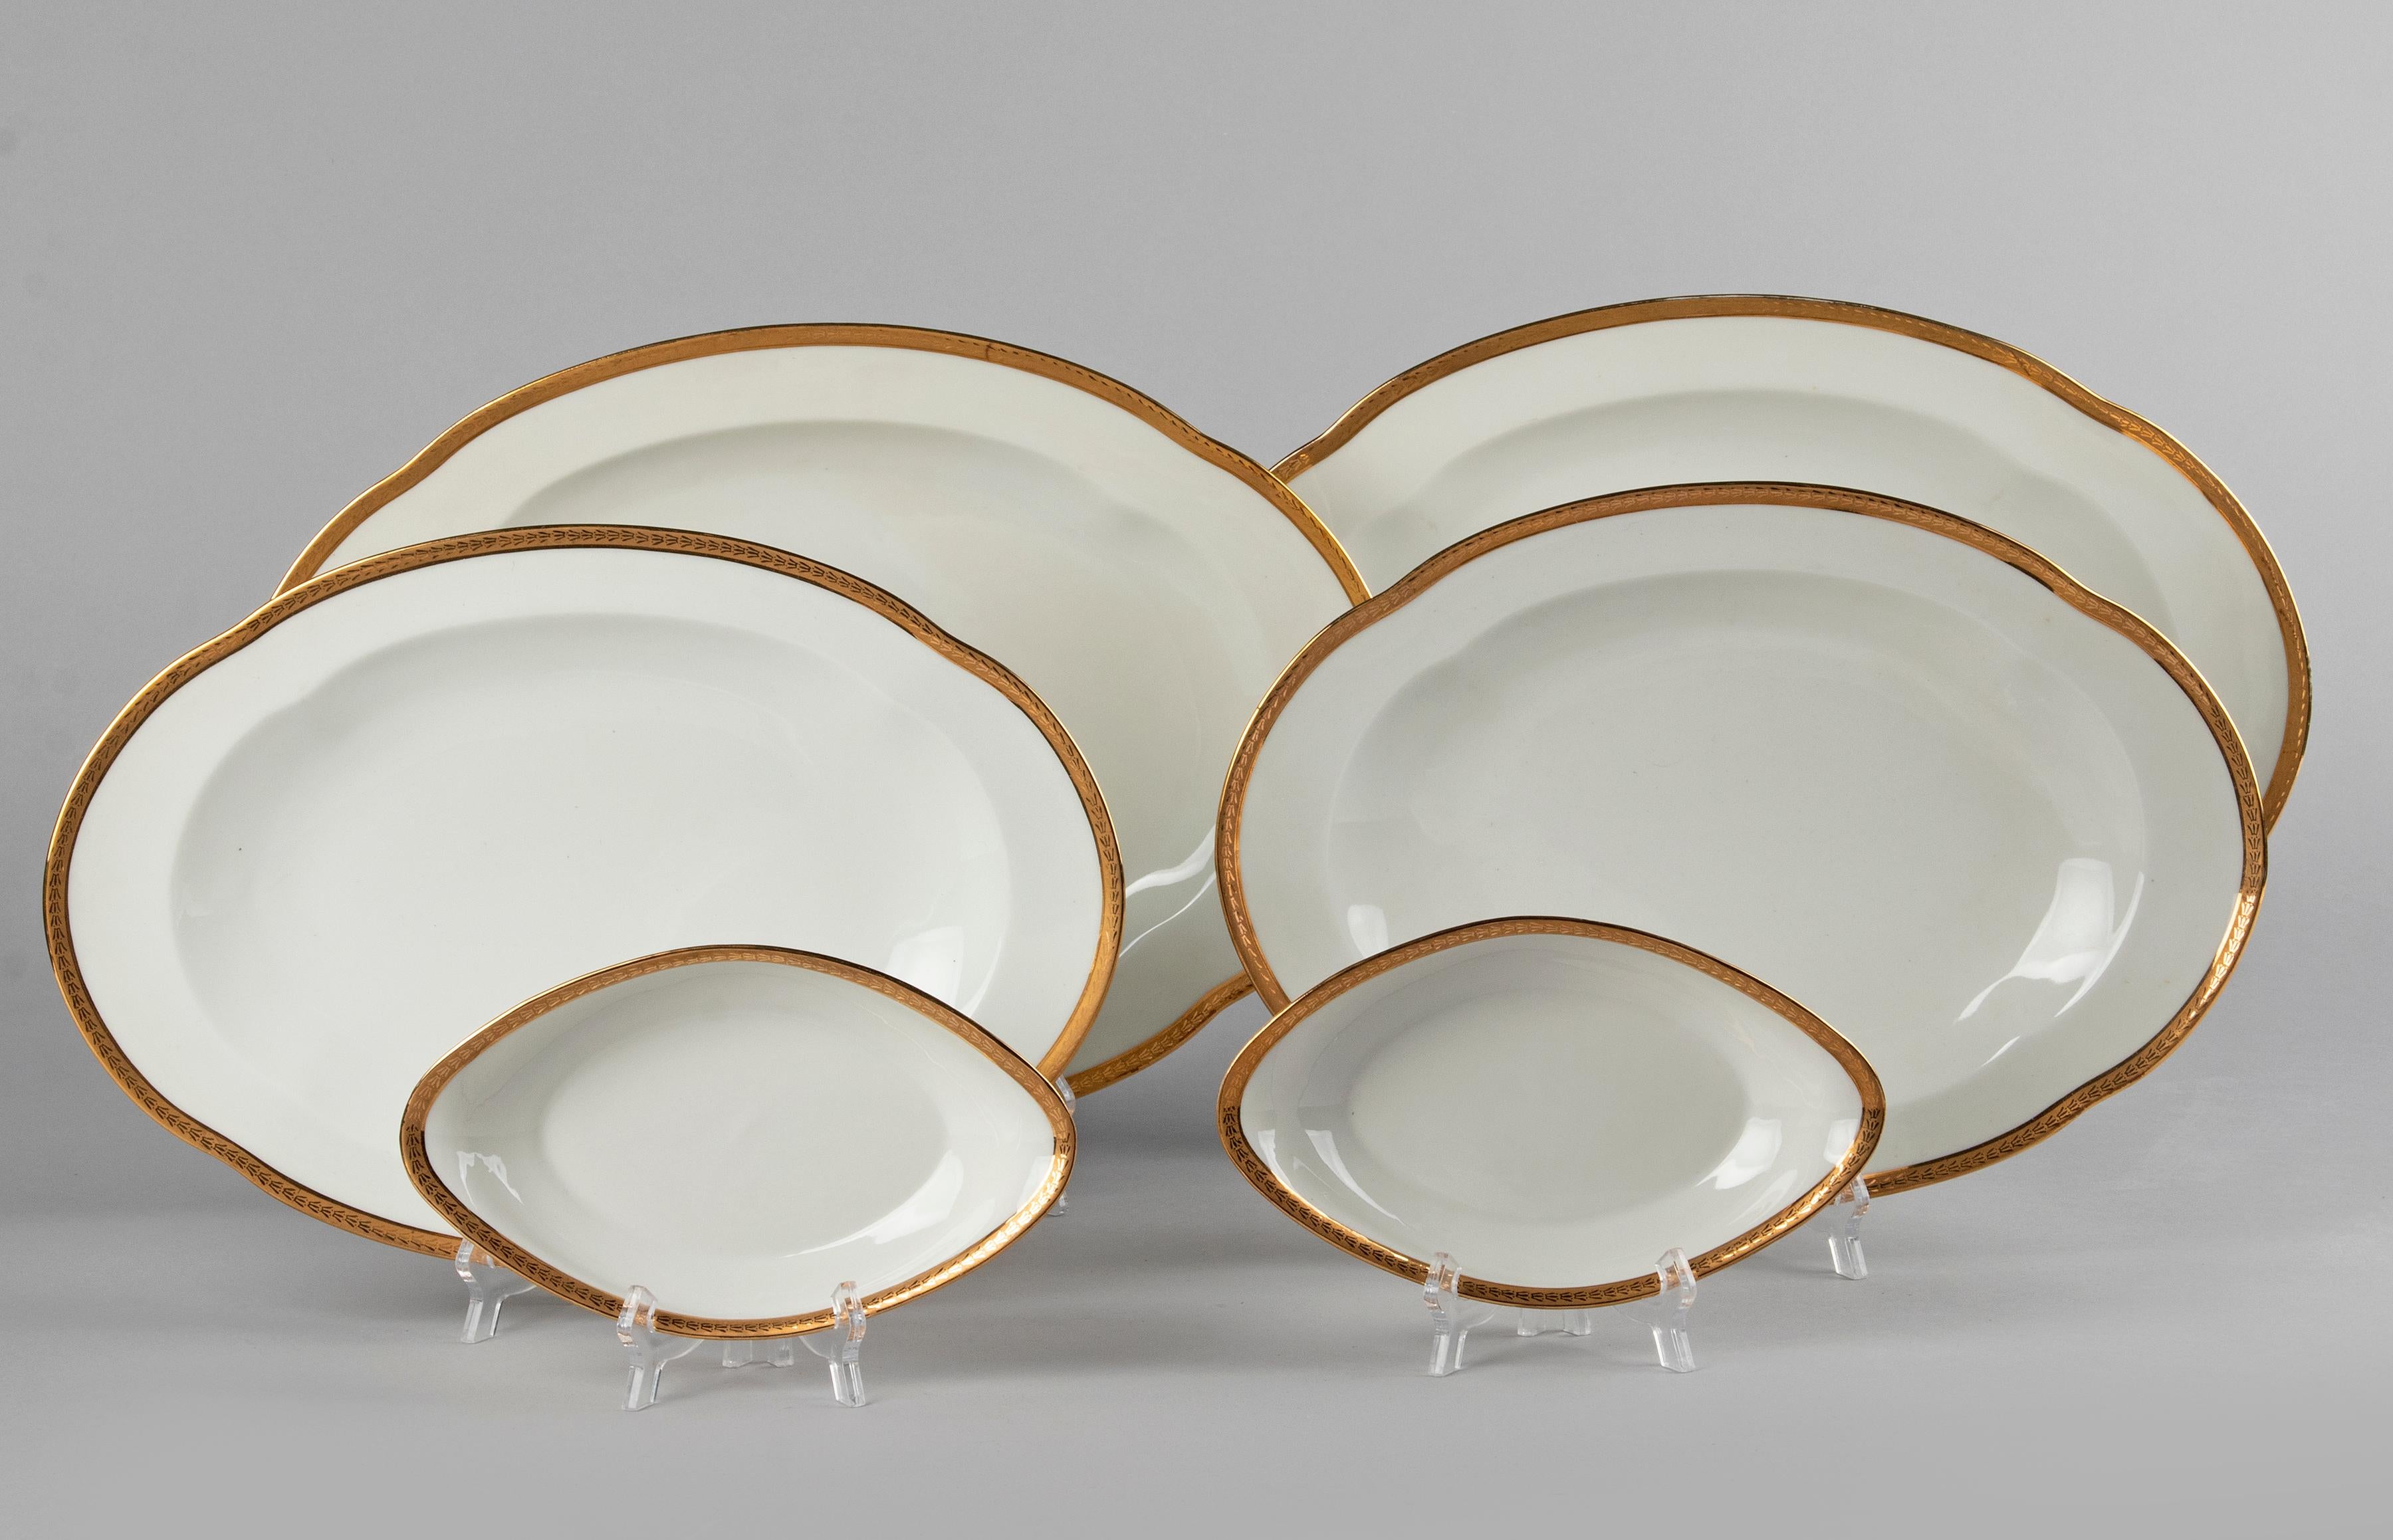 50-Piece Set Antique Porcelain Tableware by Lanternier Limoges Empire Style 9